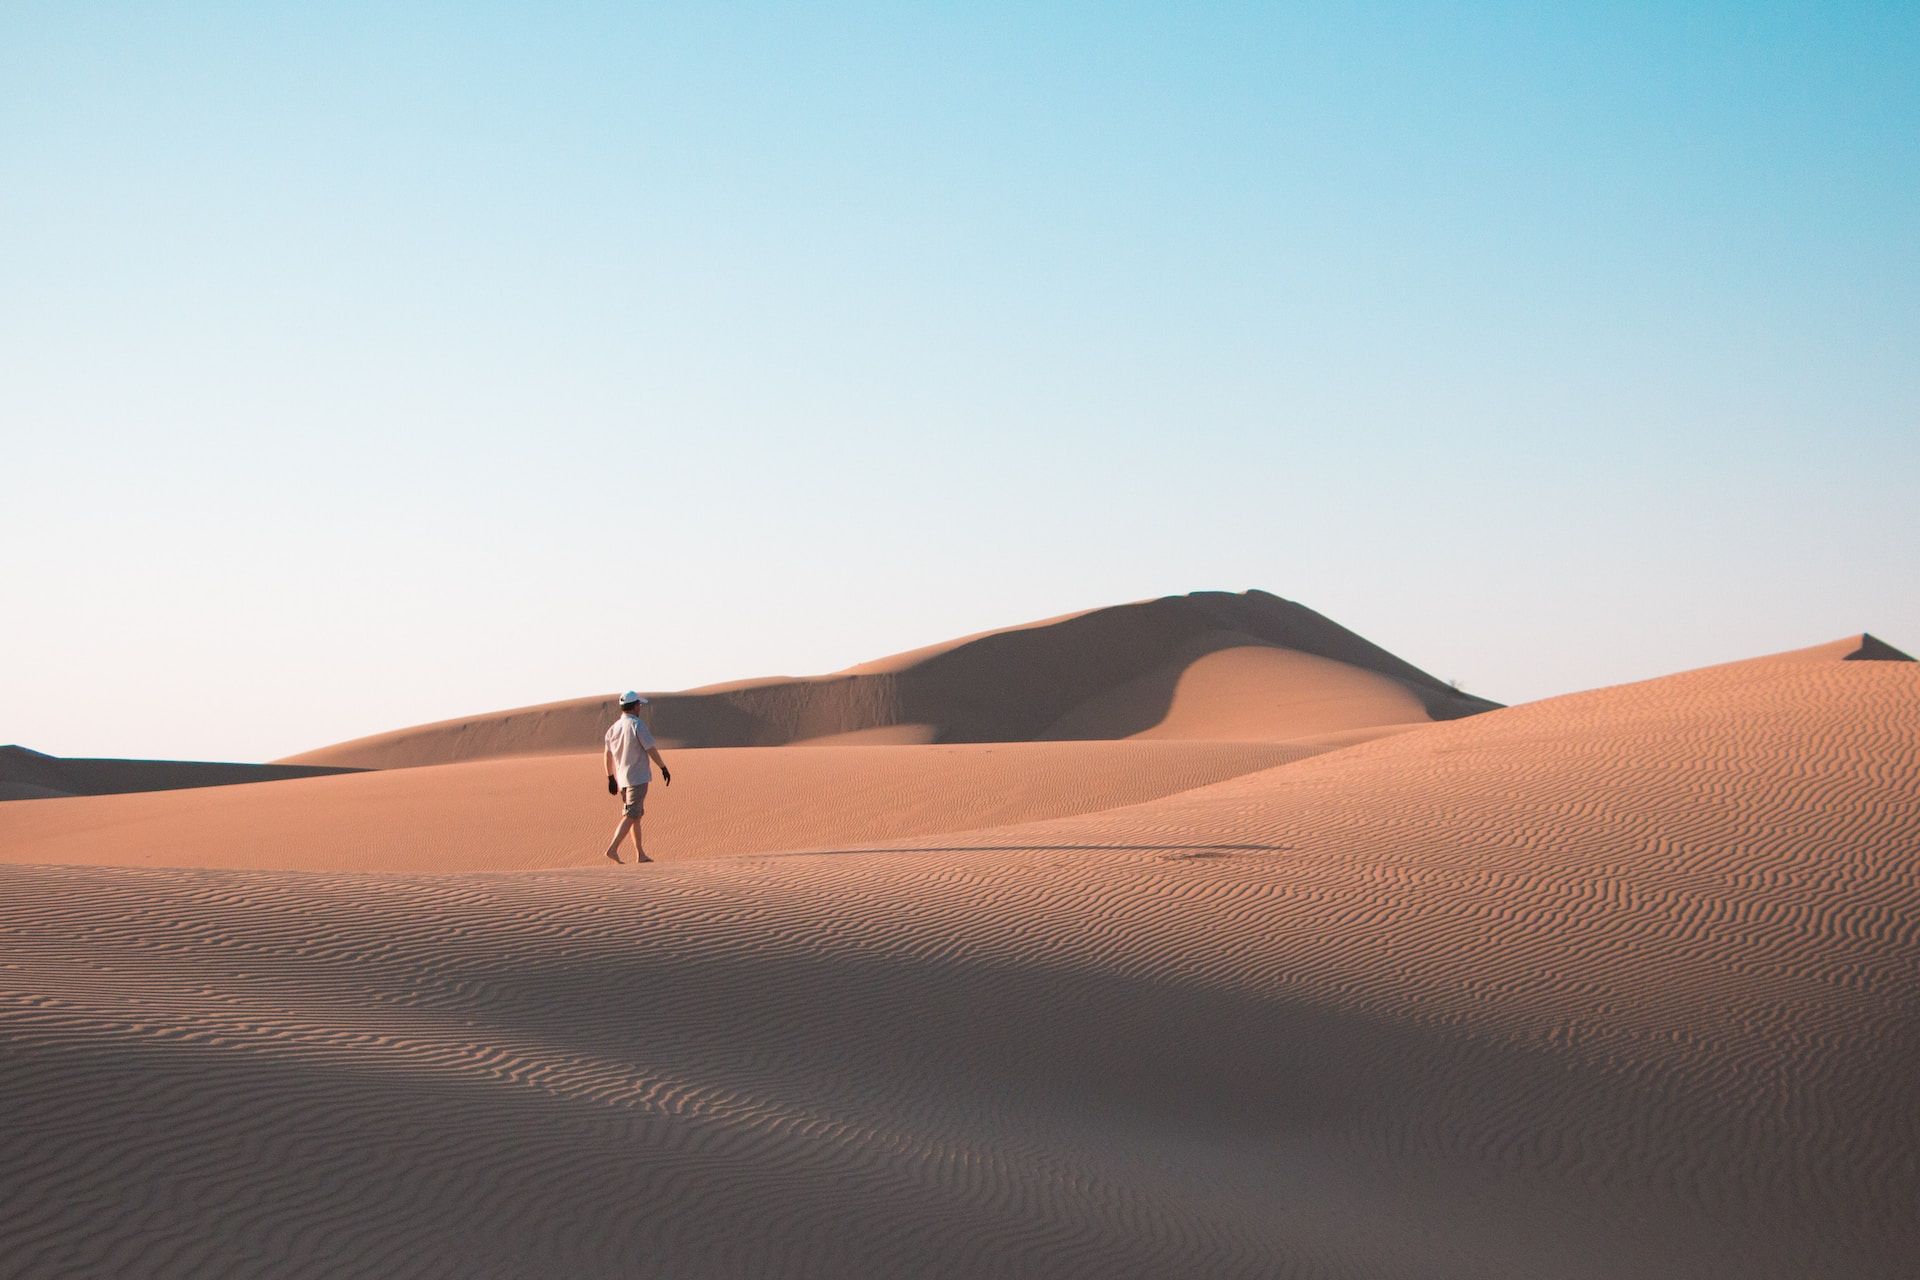 Un homme seul marche sur des dunes de sable - Photo by Yuheng Chen on https://unsplash.com/fr/photos/homme-marchant-sur-le-desert-sous-le-ciel-bleu-pendant-la-journee-Lsm-L9ahapU